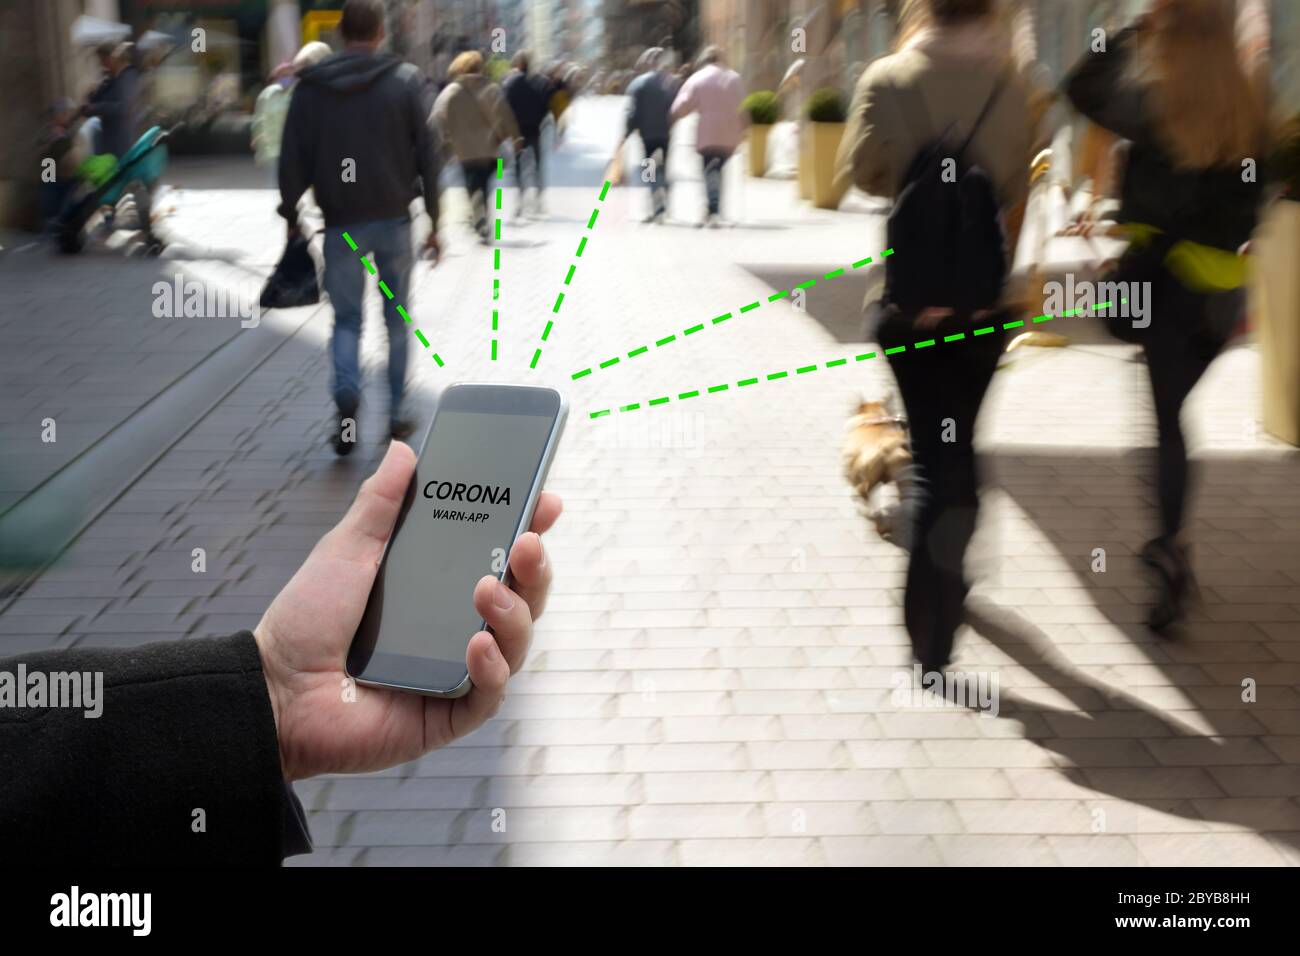 Smartphone con l'applicazione Corona WARN, l'applicazione di tracciamento dei contatti o di tracciamento della pandemia di Covid 19 collega altri telefoni da persone in movimento Foto Stock